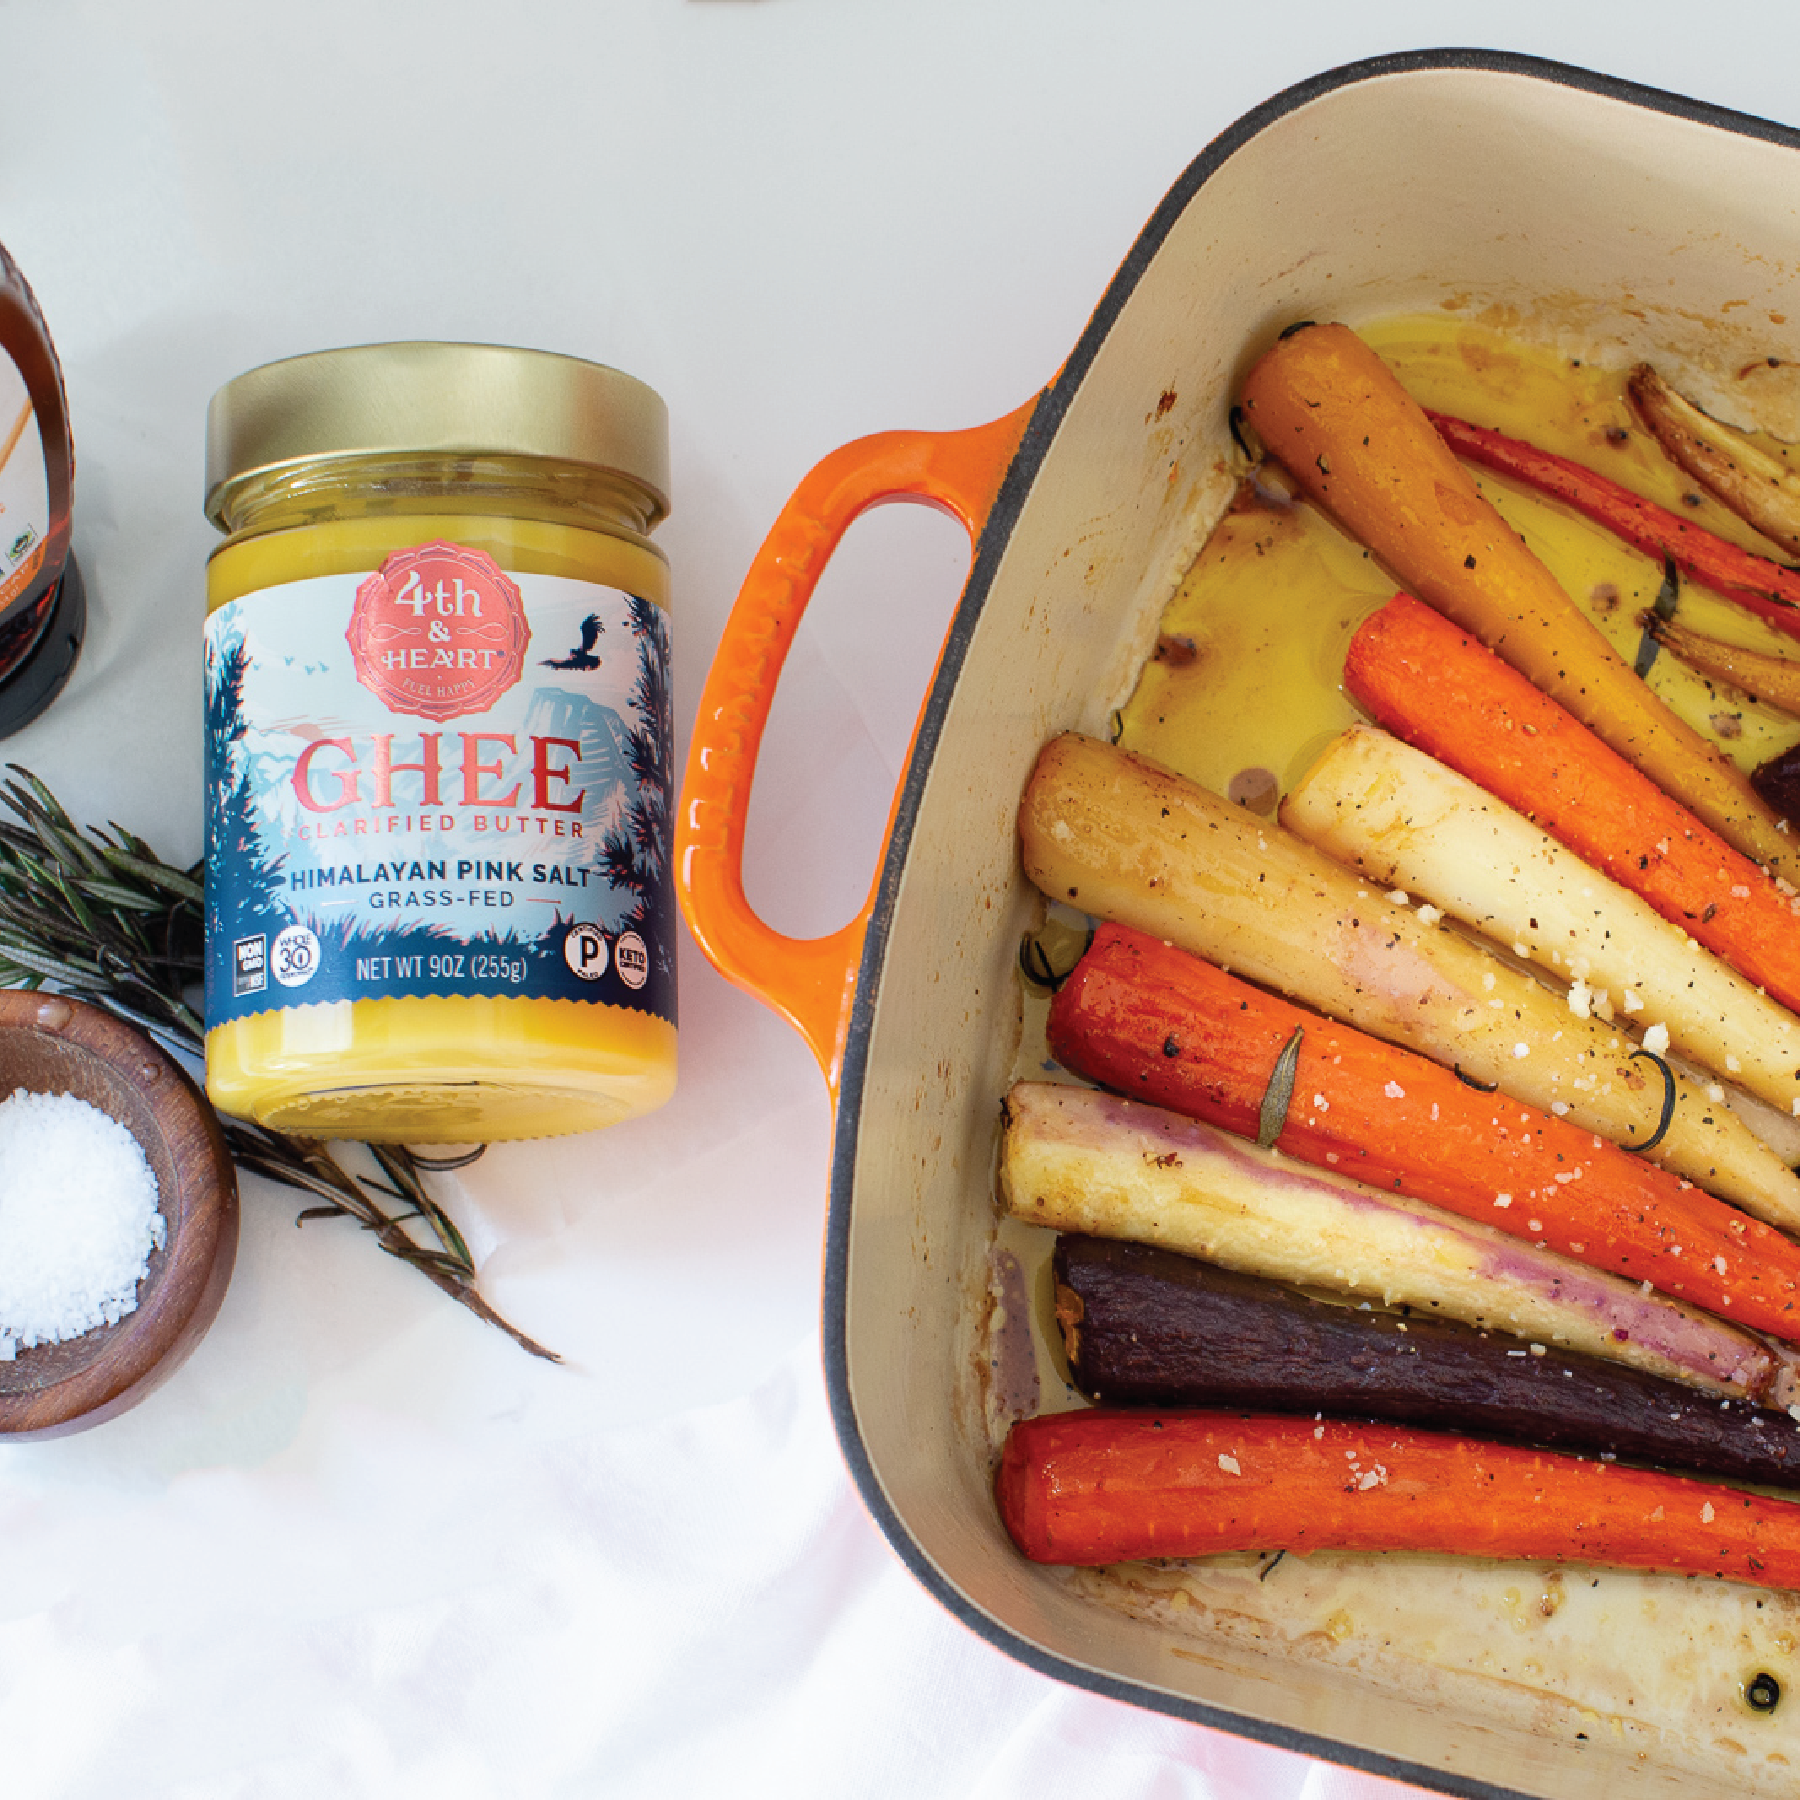 Ghee & Rosemary Roasted Carrots with a Honey Glaze